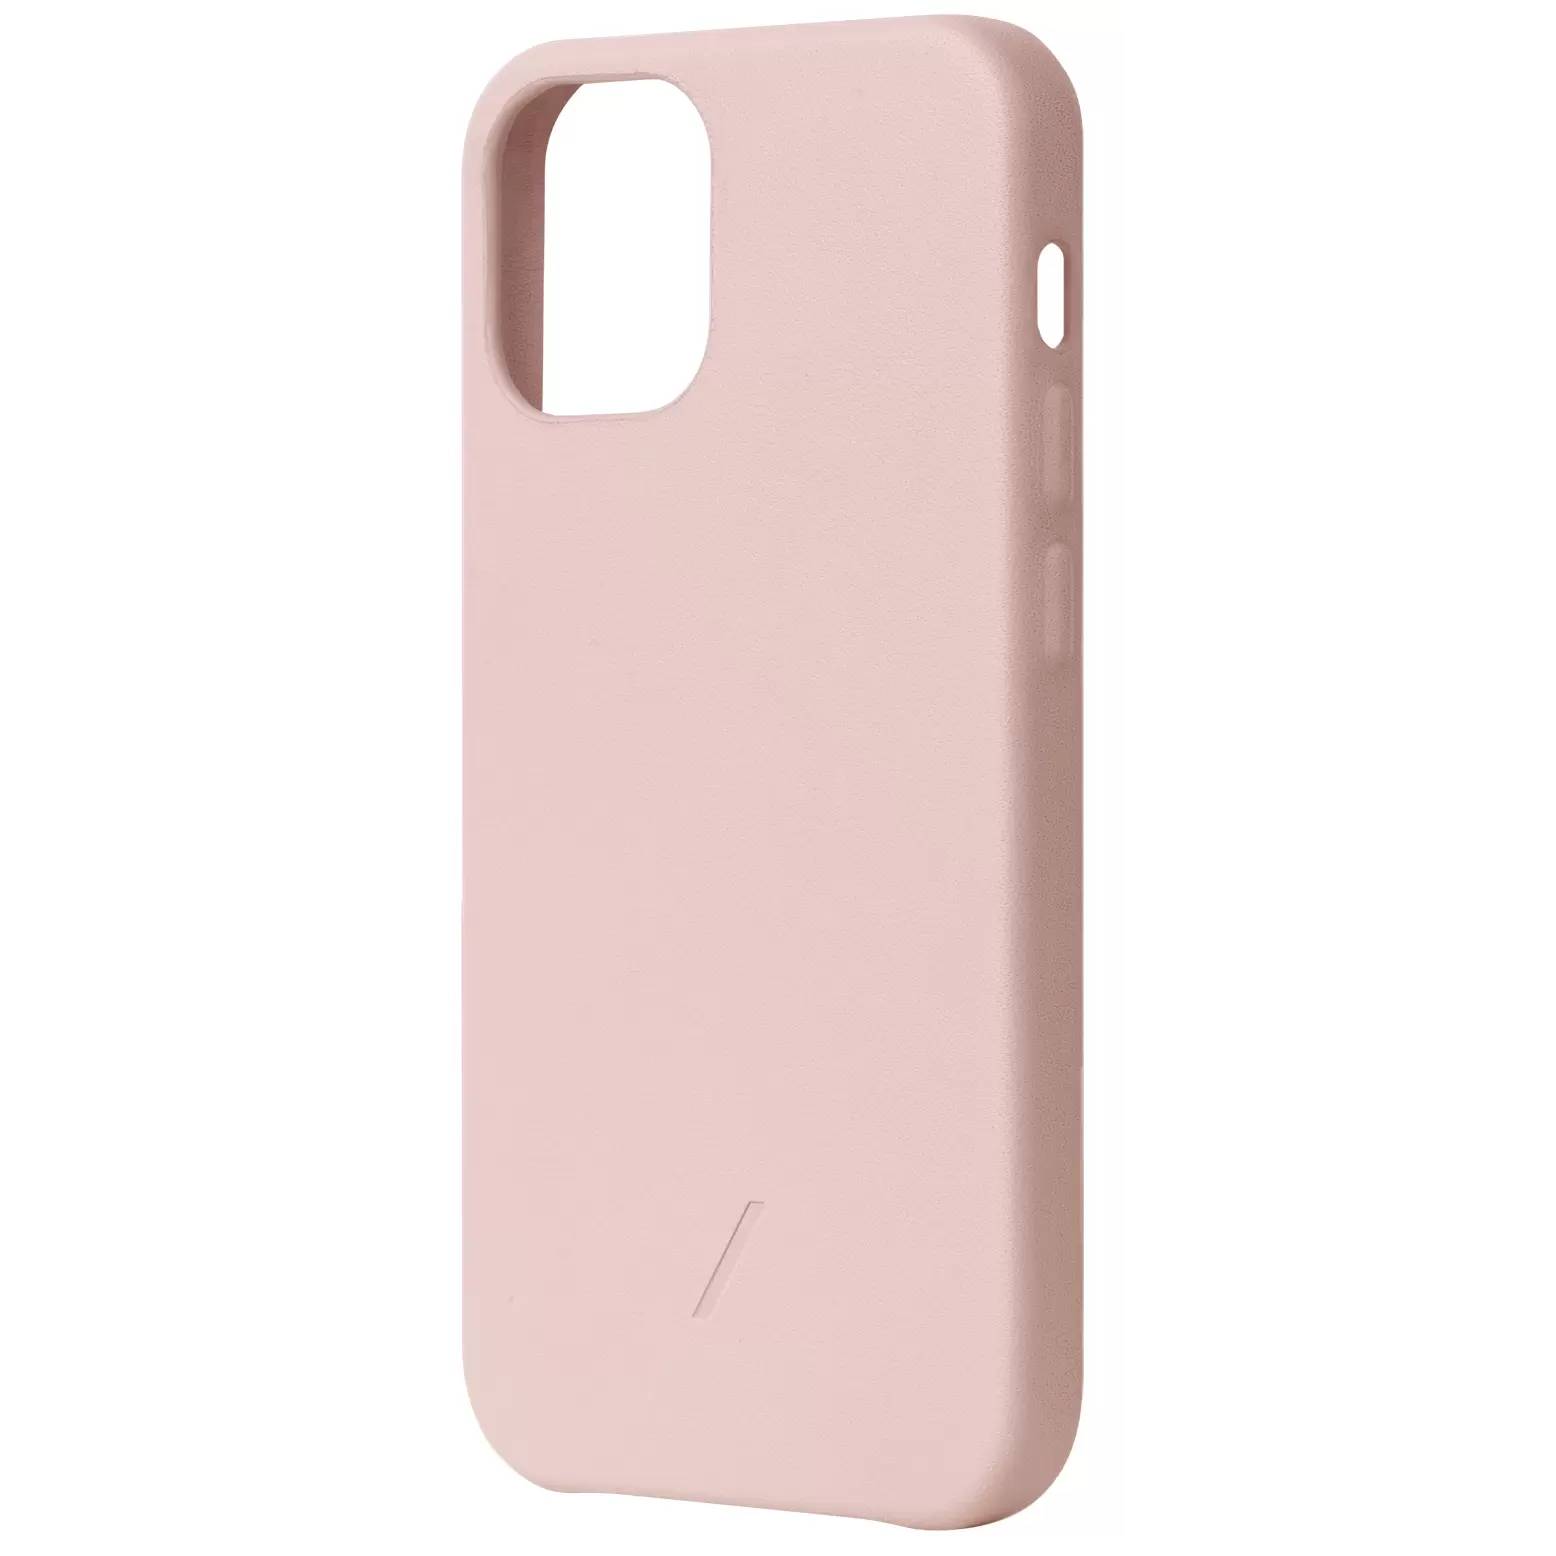 Фото — Чехол для смартфона Native Union CLIC CLASSIC iPhone 12 Pro Max, розовый